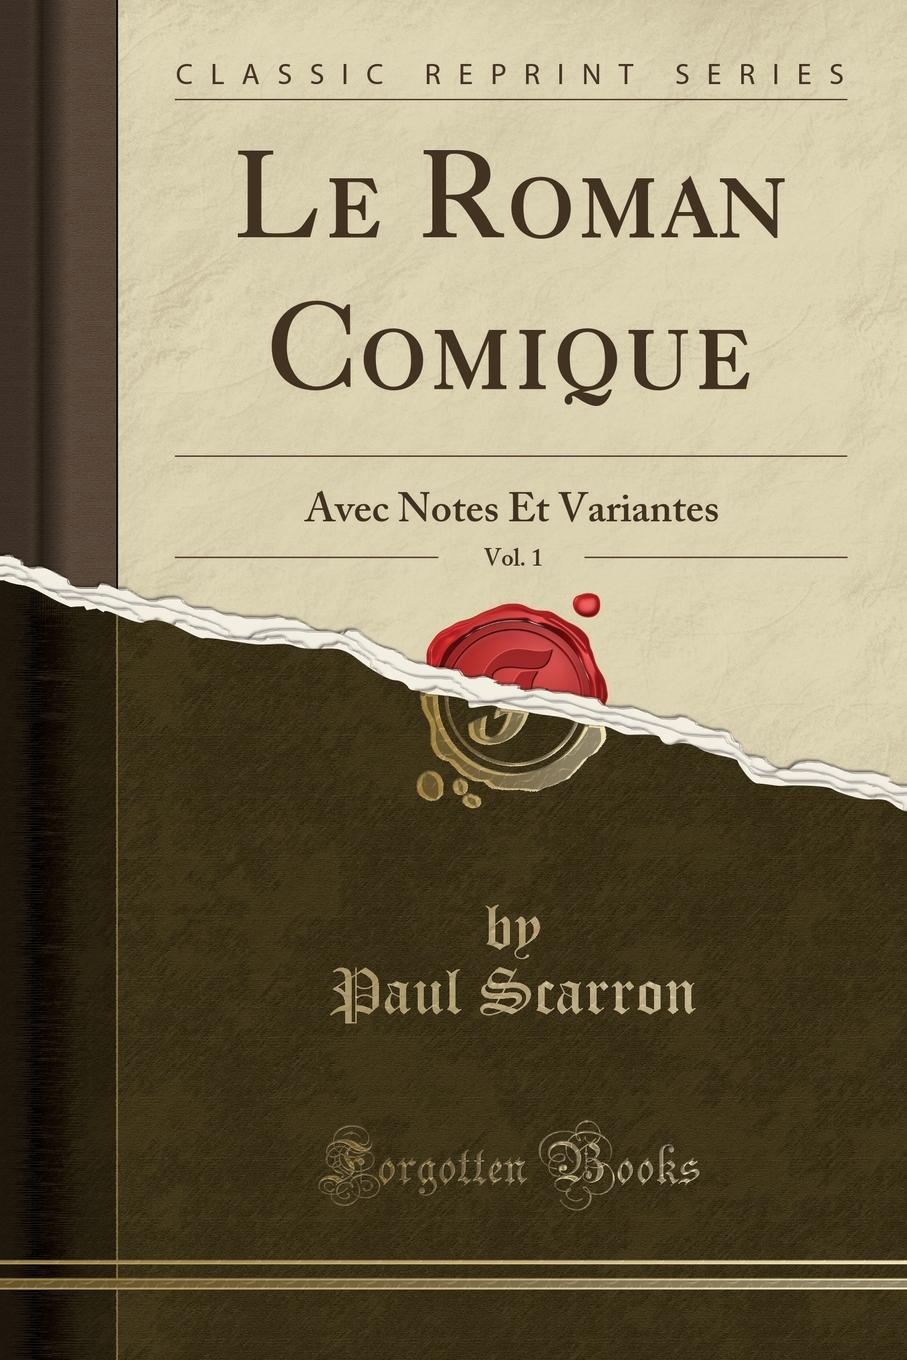 Le Roman Comique, Vol. 1. Avec Notes Et Variantes (Classic Reprint)